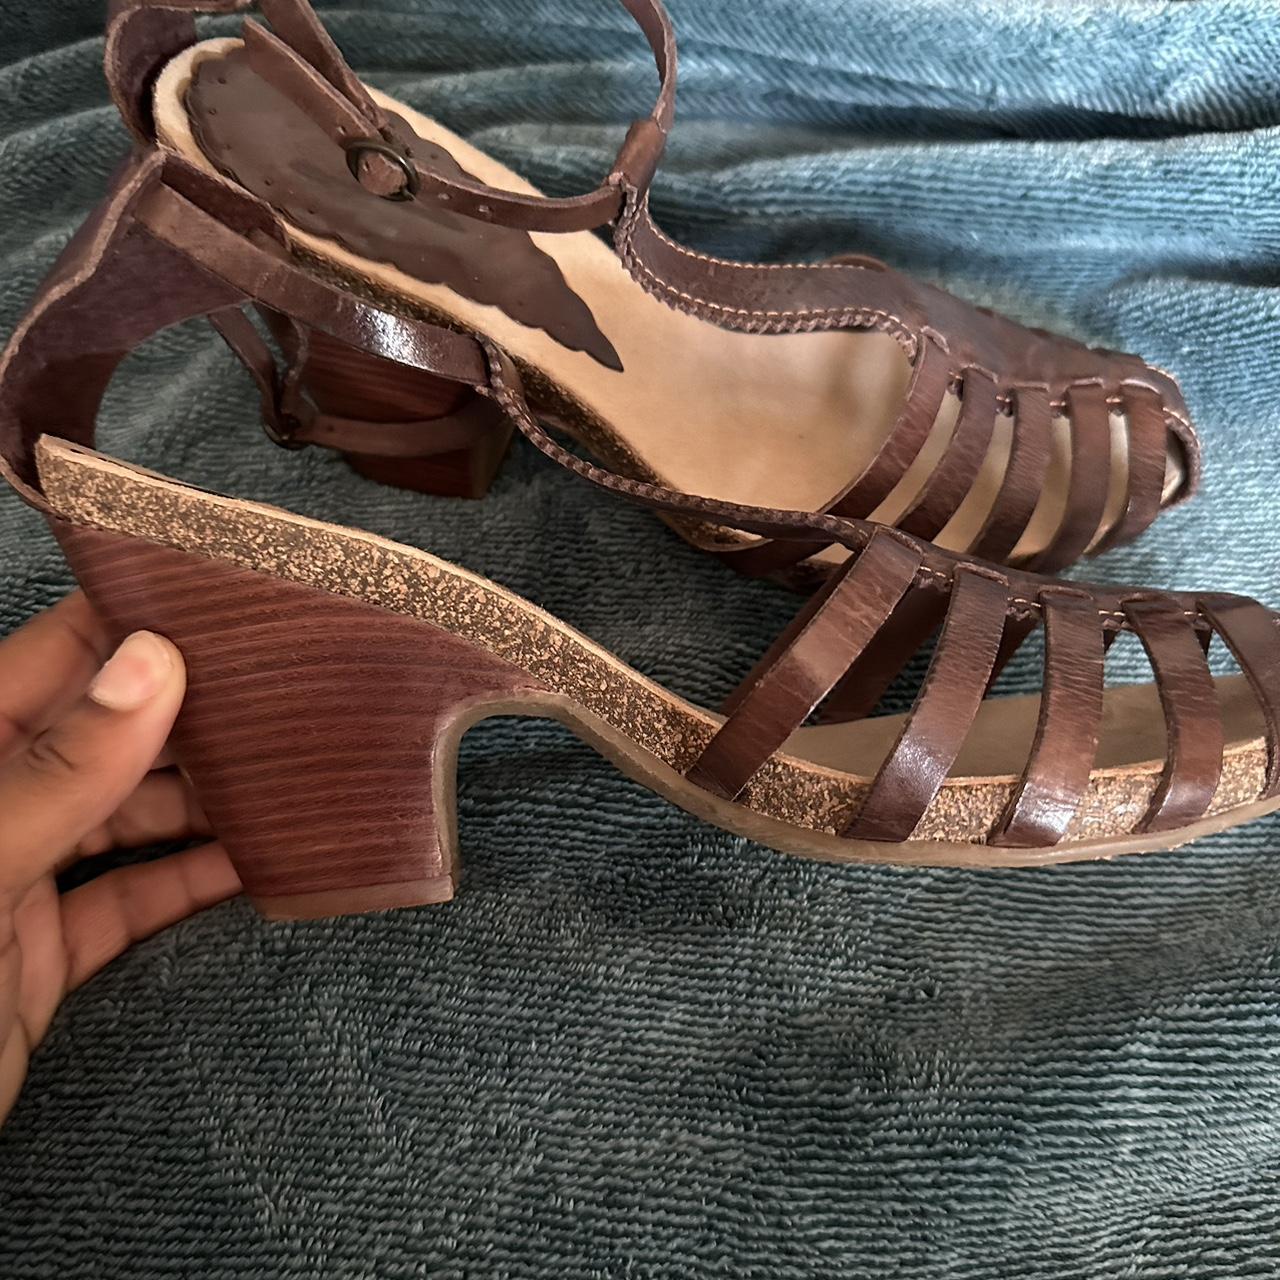 Vintage Vince Camuto sandals real leather size 10... - Depop